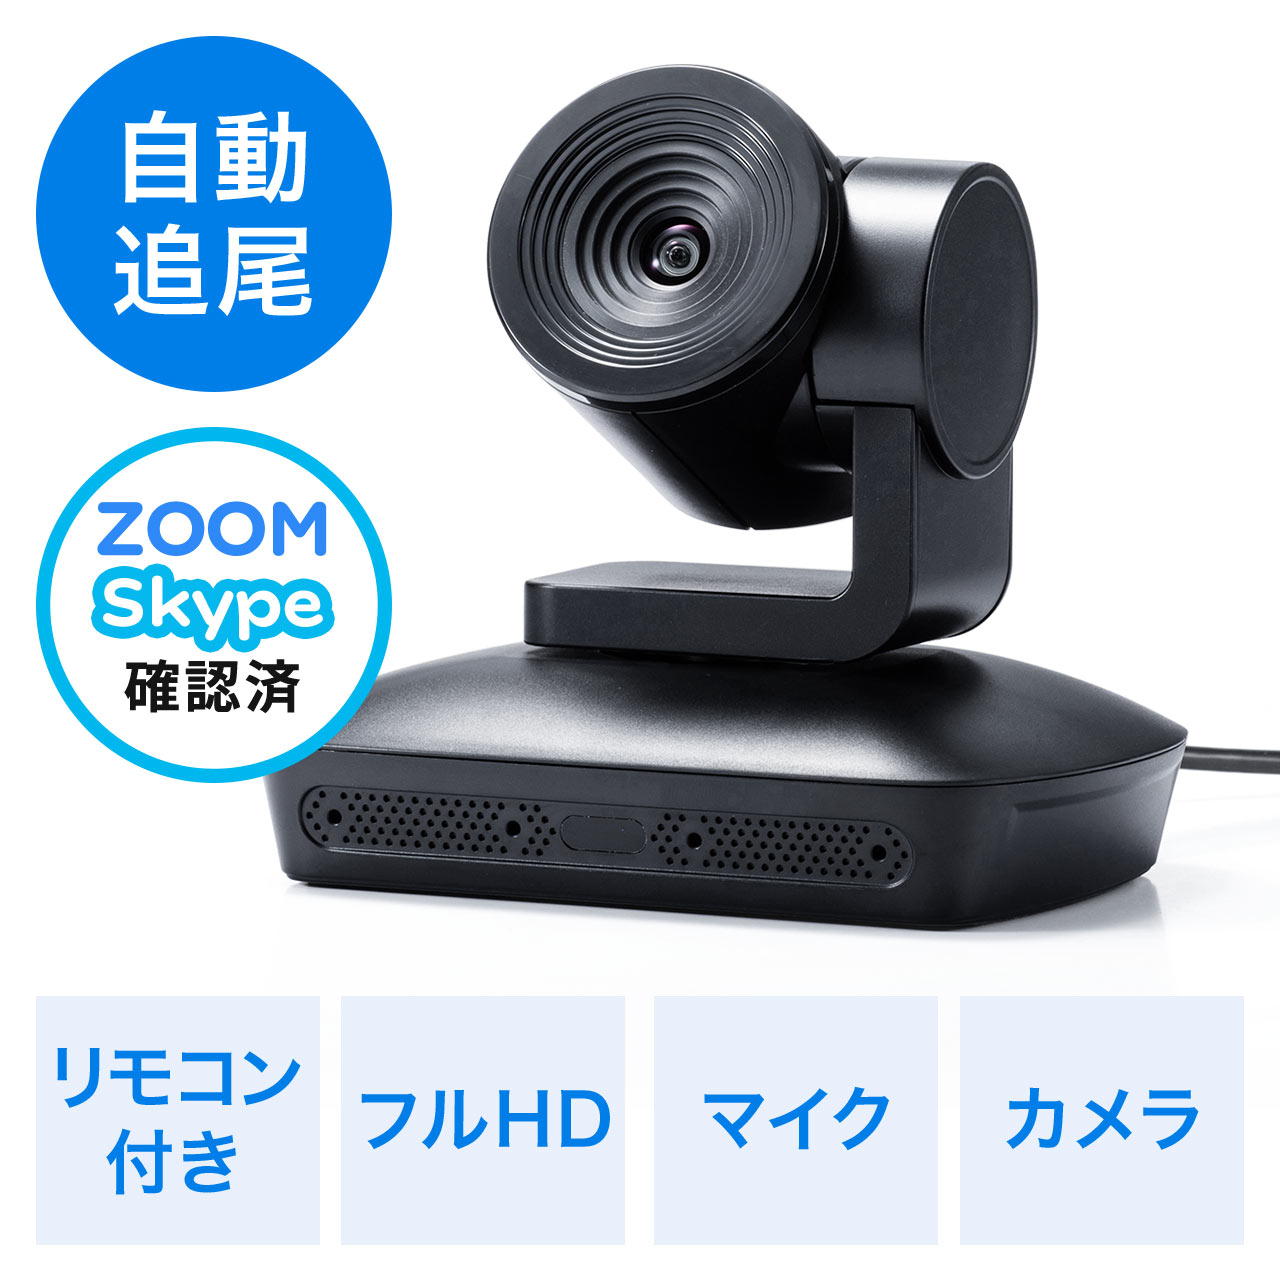 ビデオ会議カメラ Web会議カメラ 広角 自動追尾型カメラ マイク搭載 フルhd対応 リモコン付 Skype Zoom対応 400 Cam072の販売商品 通販ならサンワダイレクト